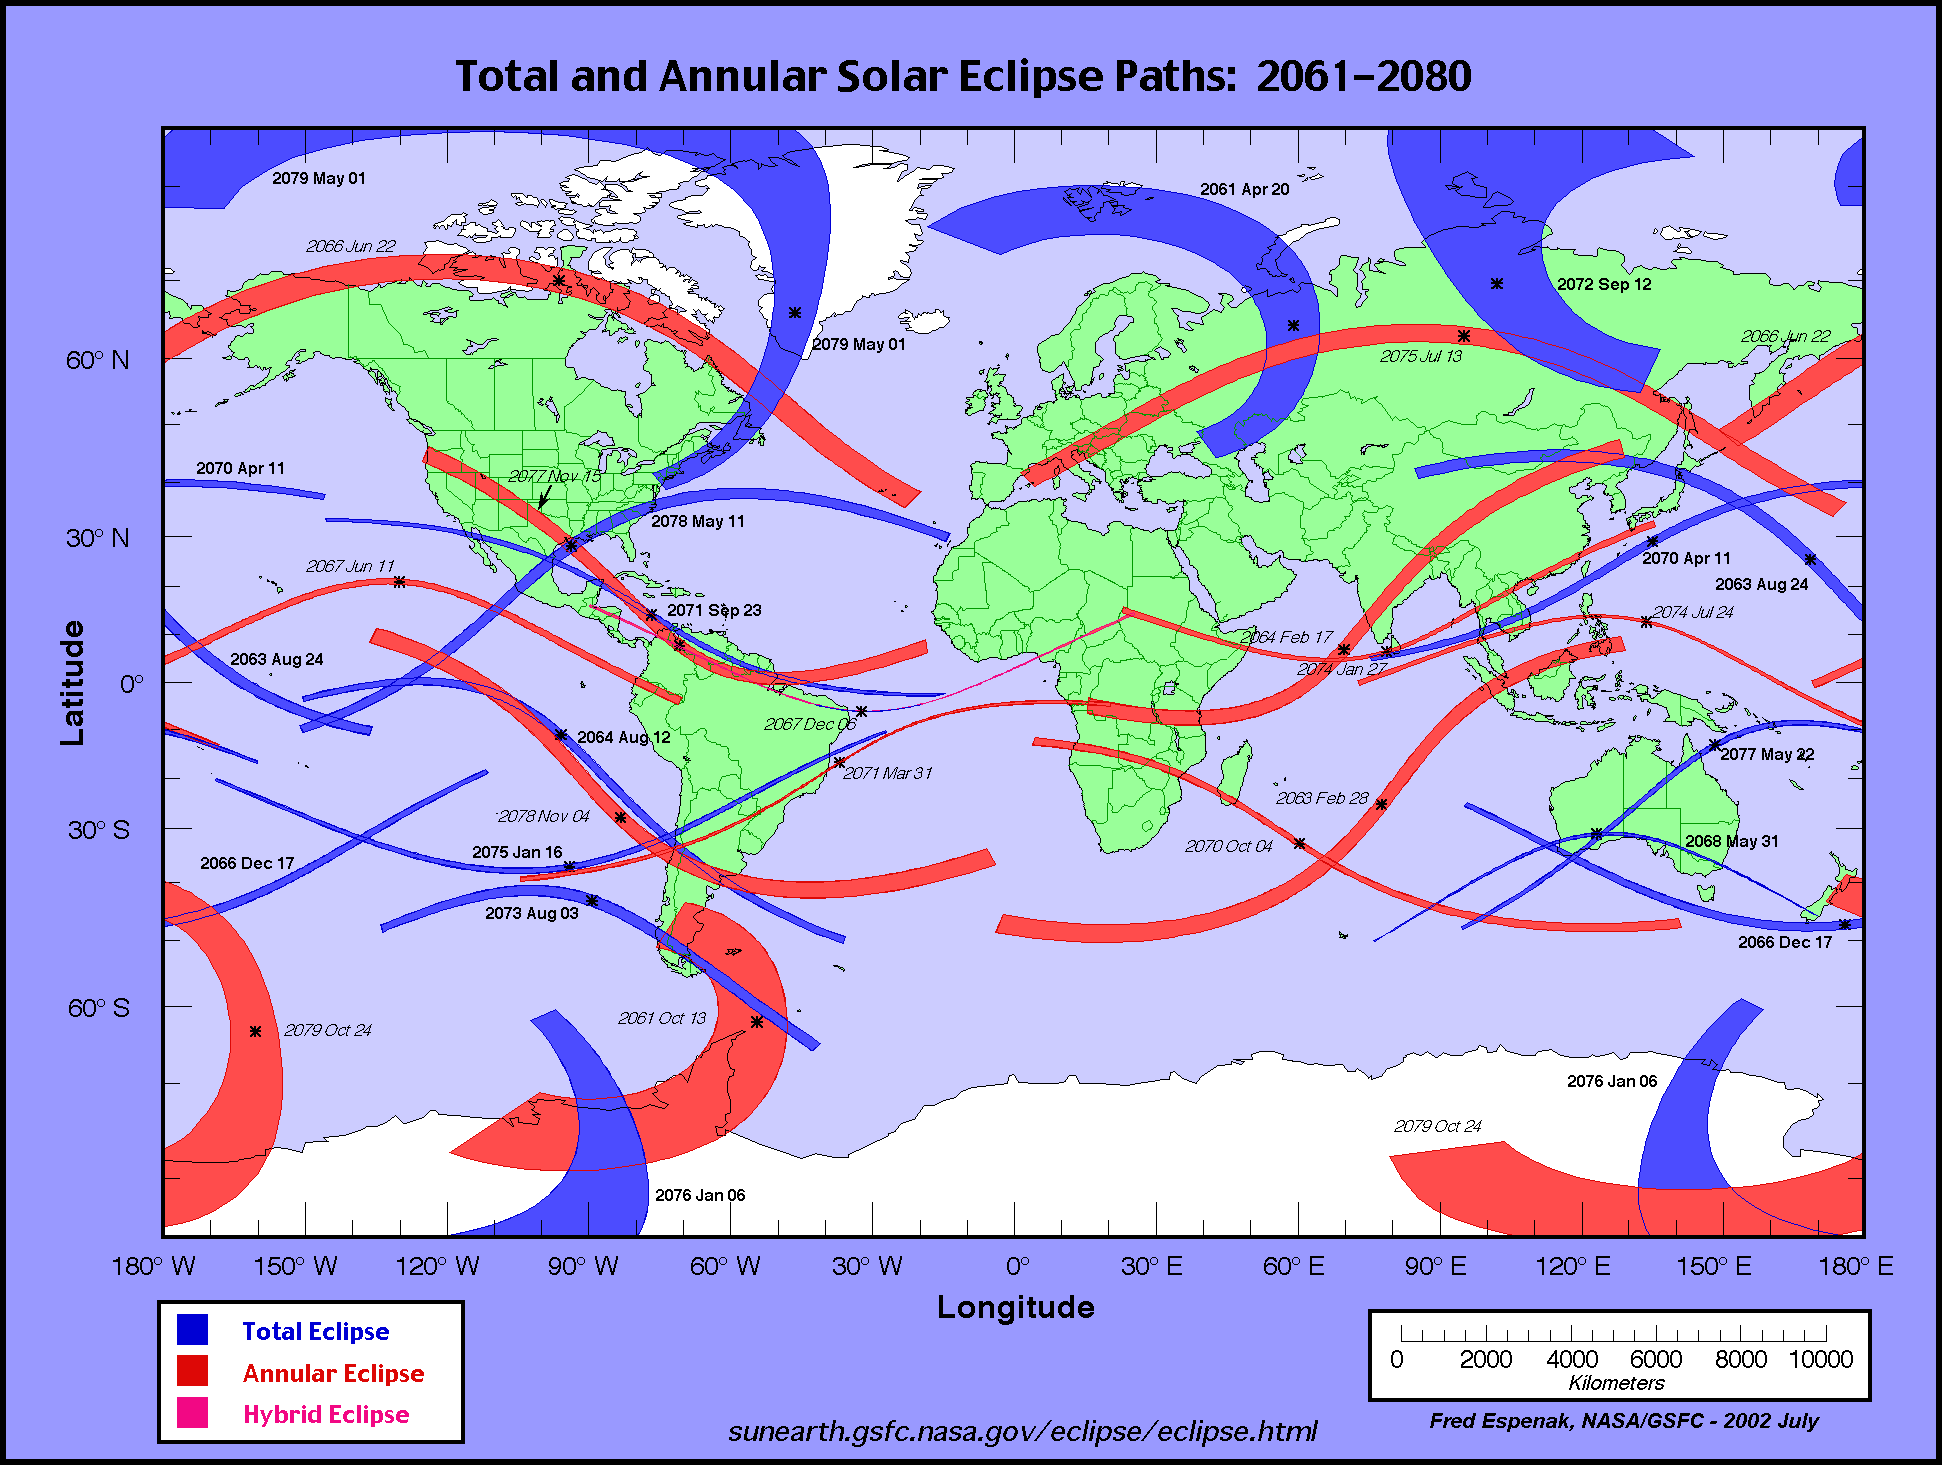 calendario e mappe eclissi solari totali e anulari dal 2061 al 2080